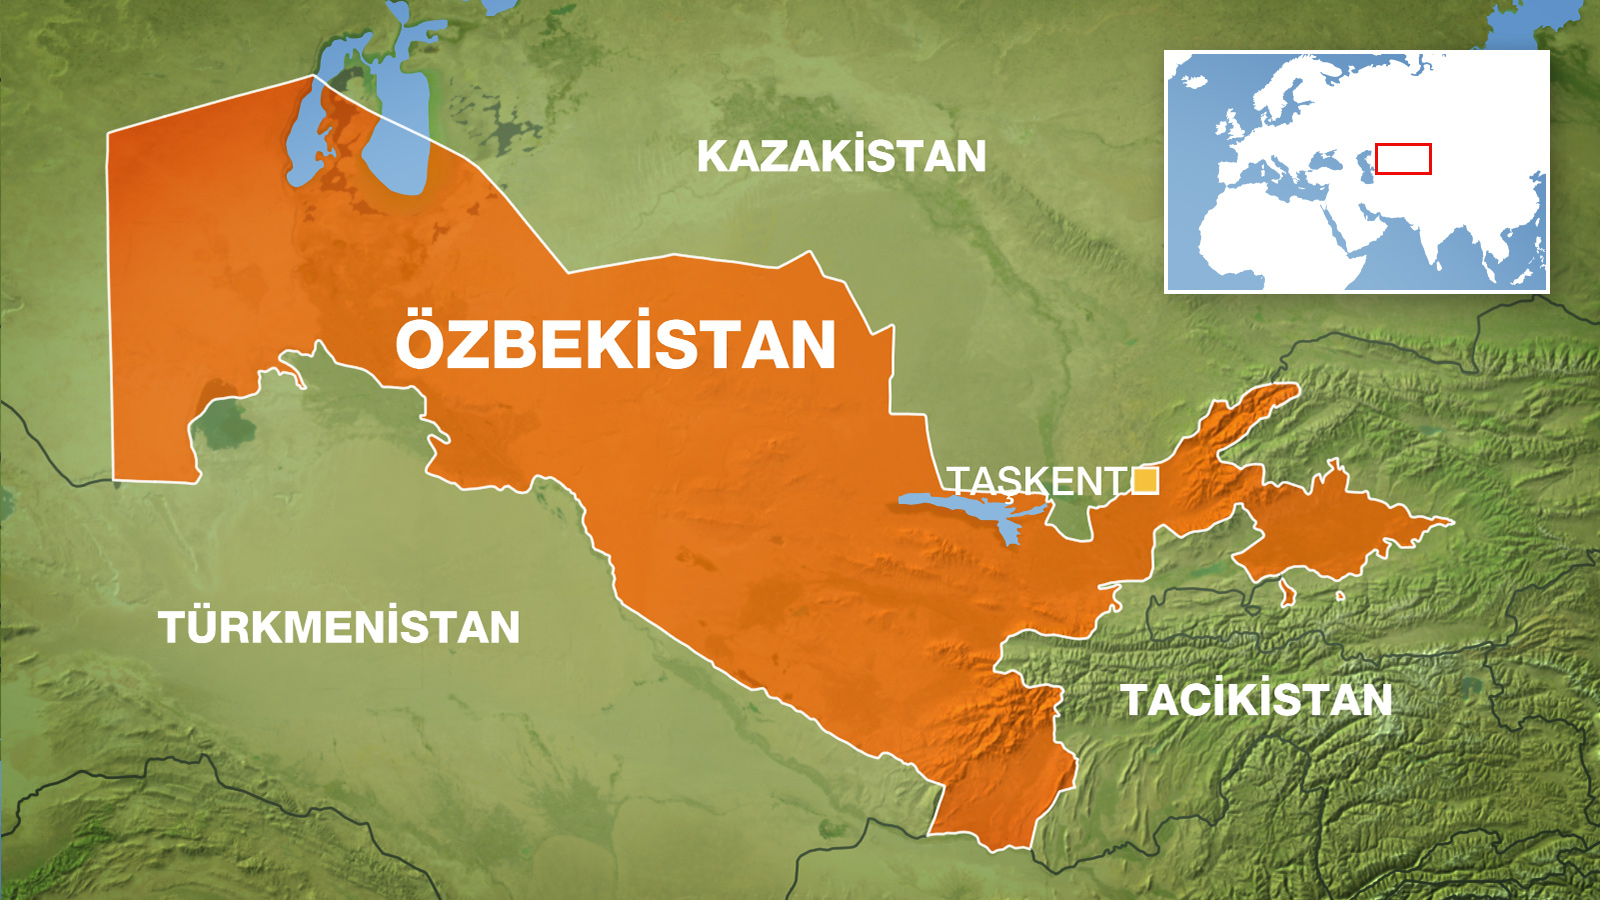 Elektronik Ön Bildirim Pilot Uygulamaları Özbekistan’da Başladı